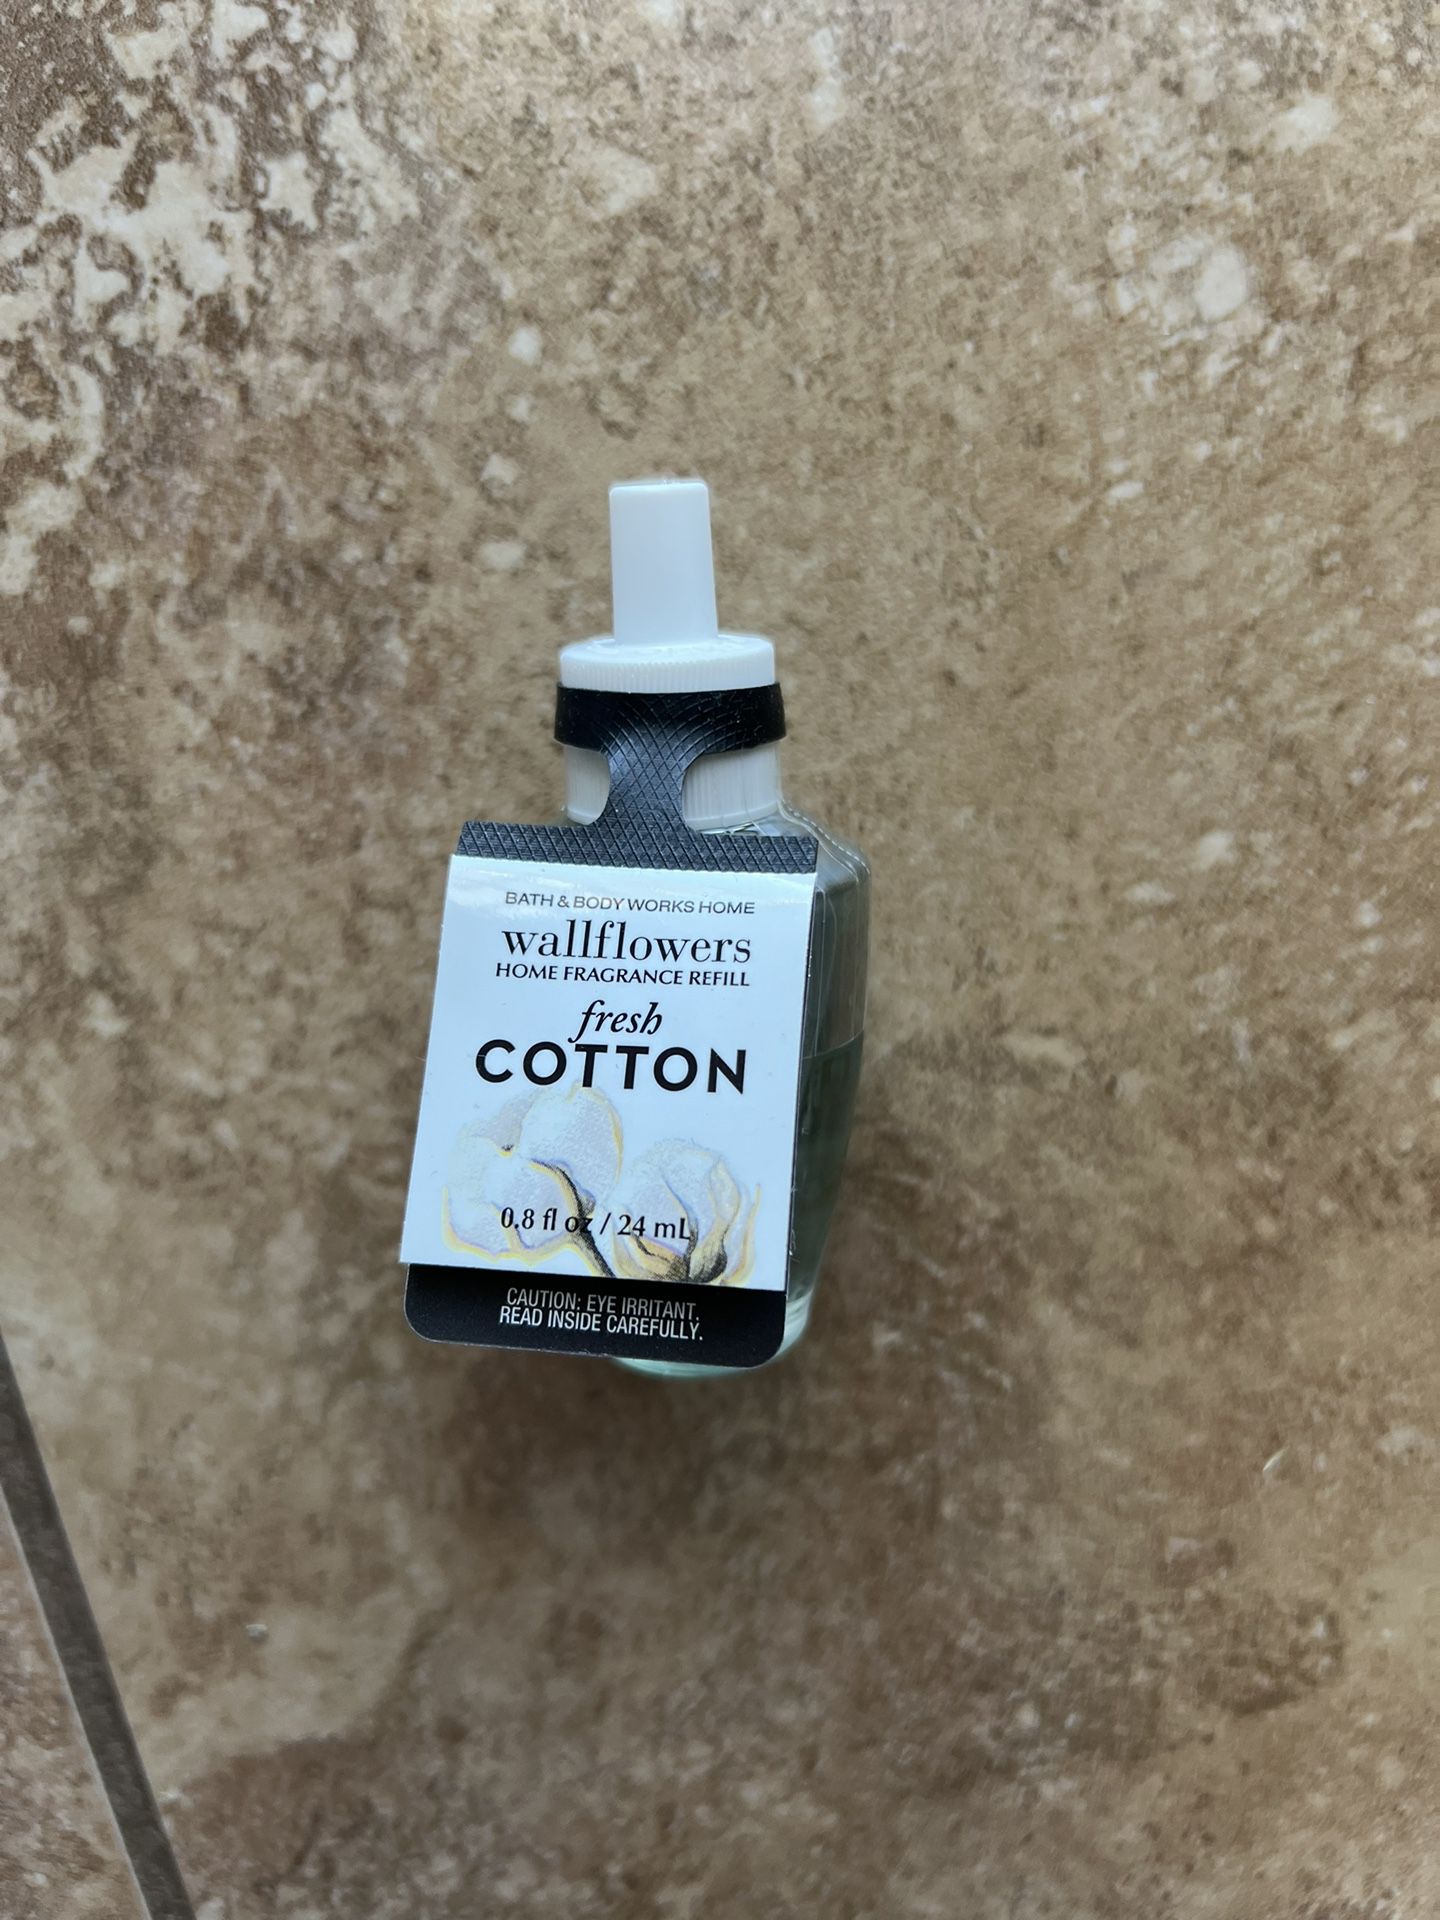 Fresh Cotton Wallflower Fragrance Refill